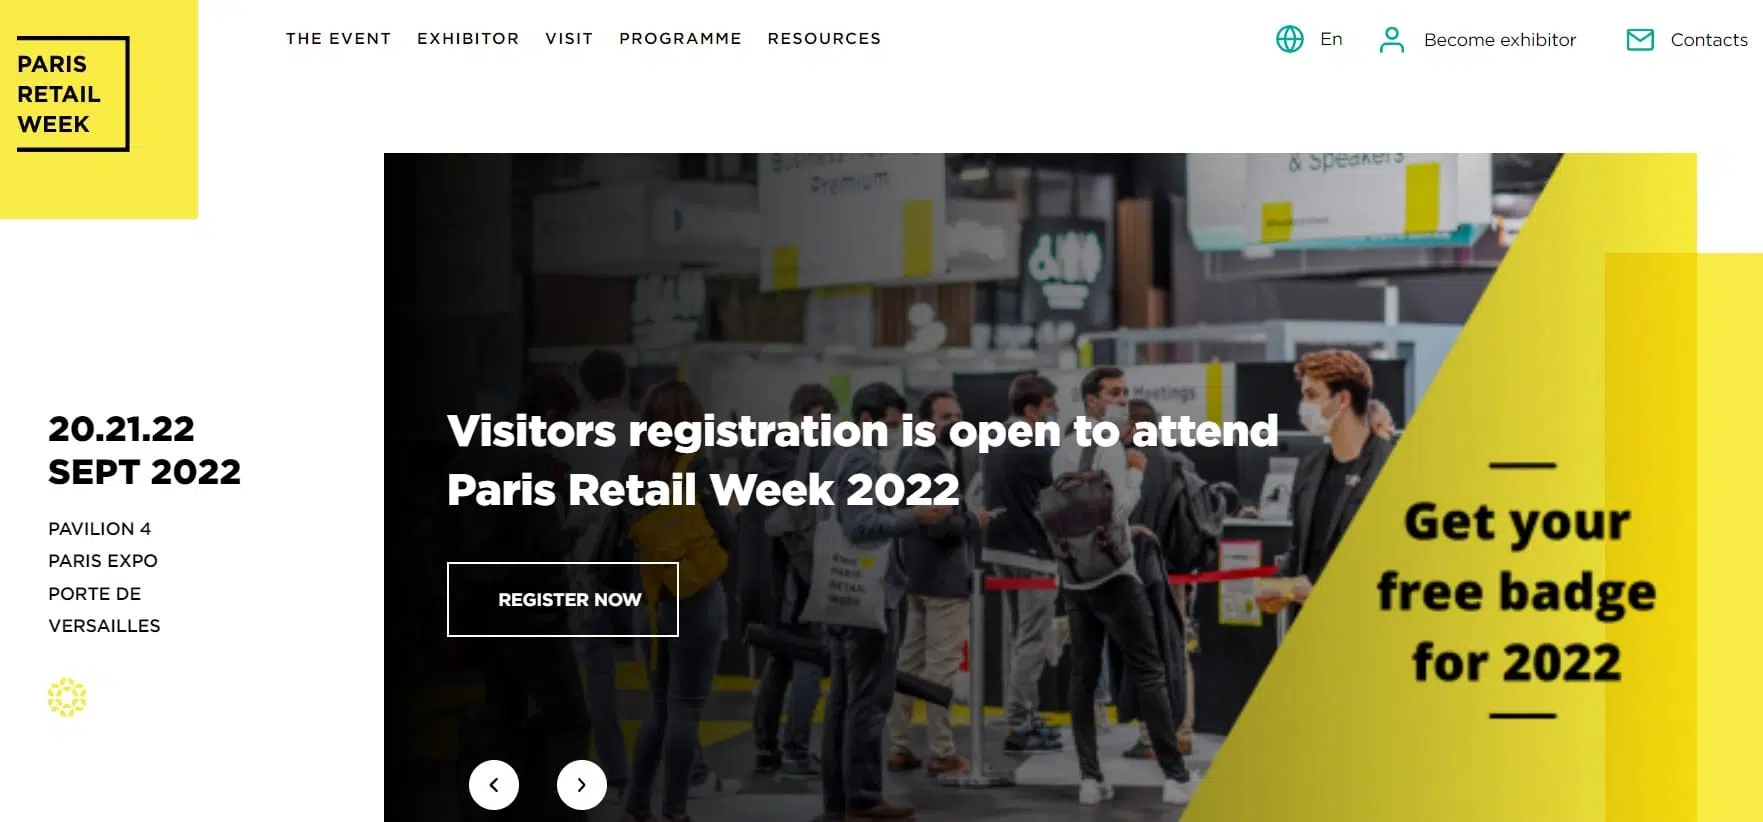 Paris Retail Week Areas of Exhibition at Paris Retail Week